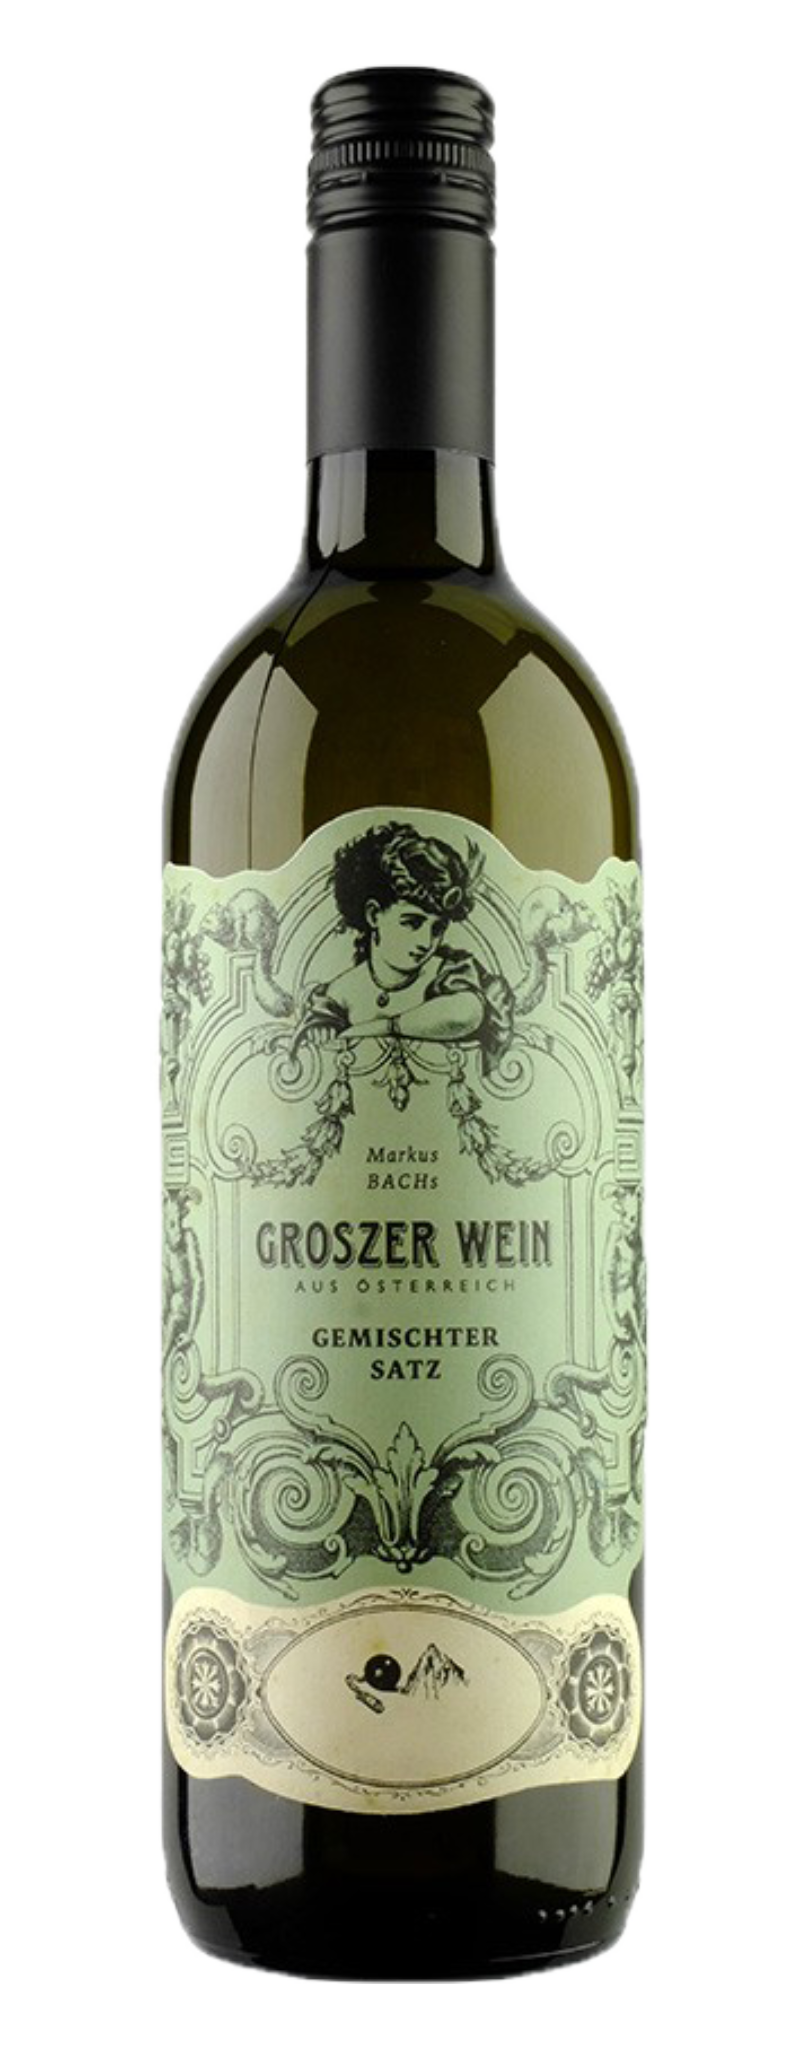 Groszer Wein Gemischter Satz, Sudburgenland, Austria  - 750ml